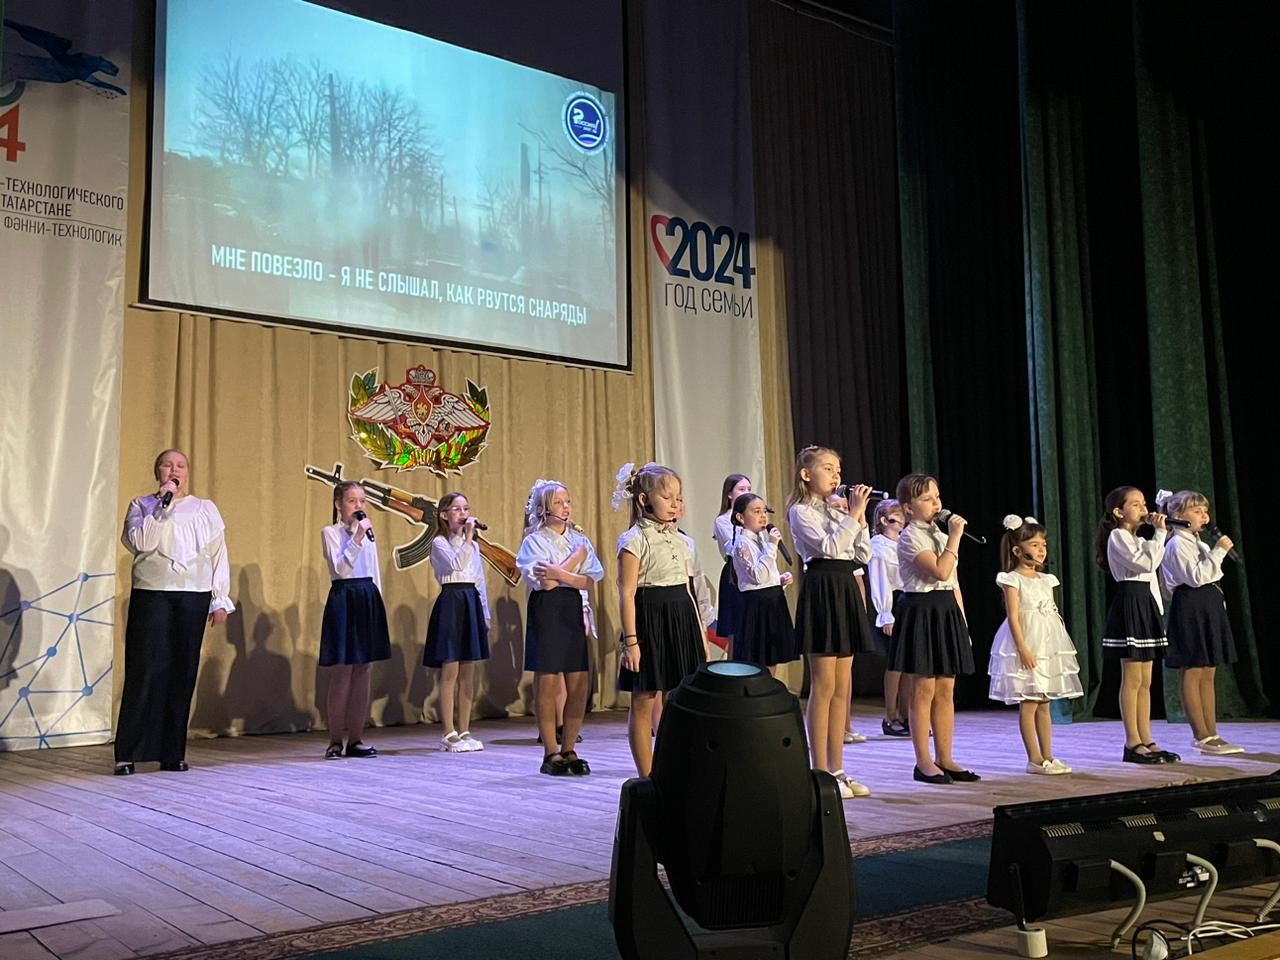 В Болгаре прошёл благотворительный концерт в поддержку военнослужащих, отправившихся на СВО из Спасского района.